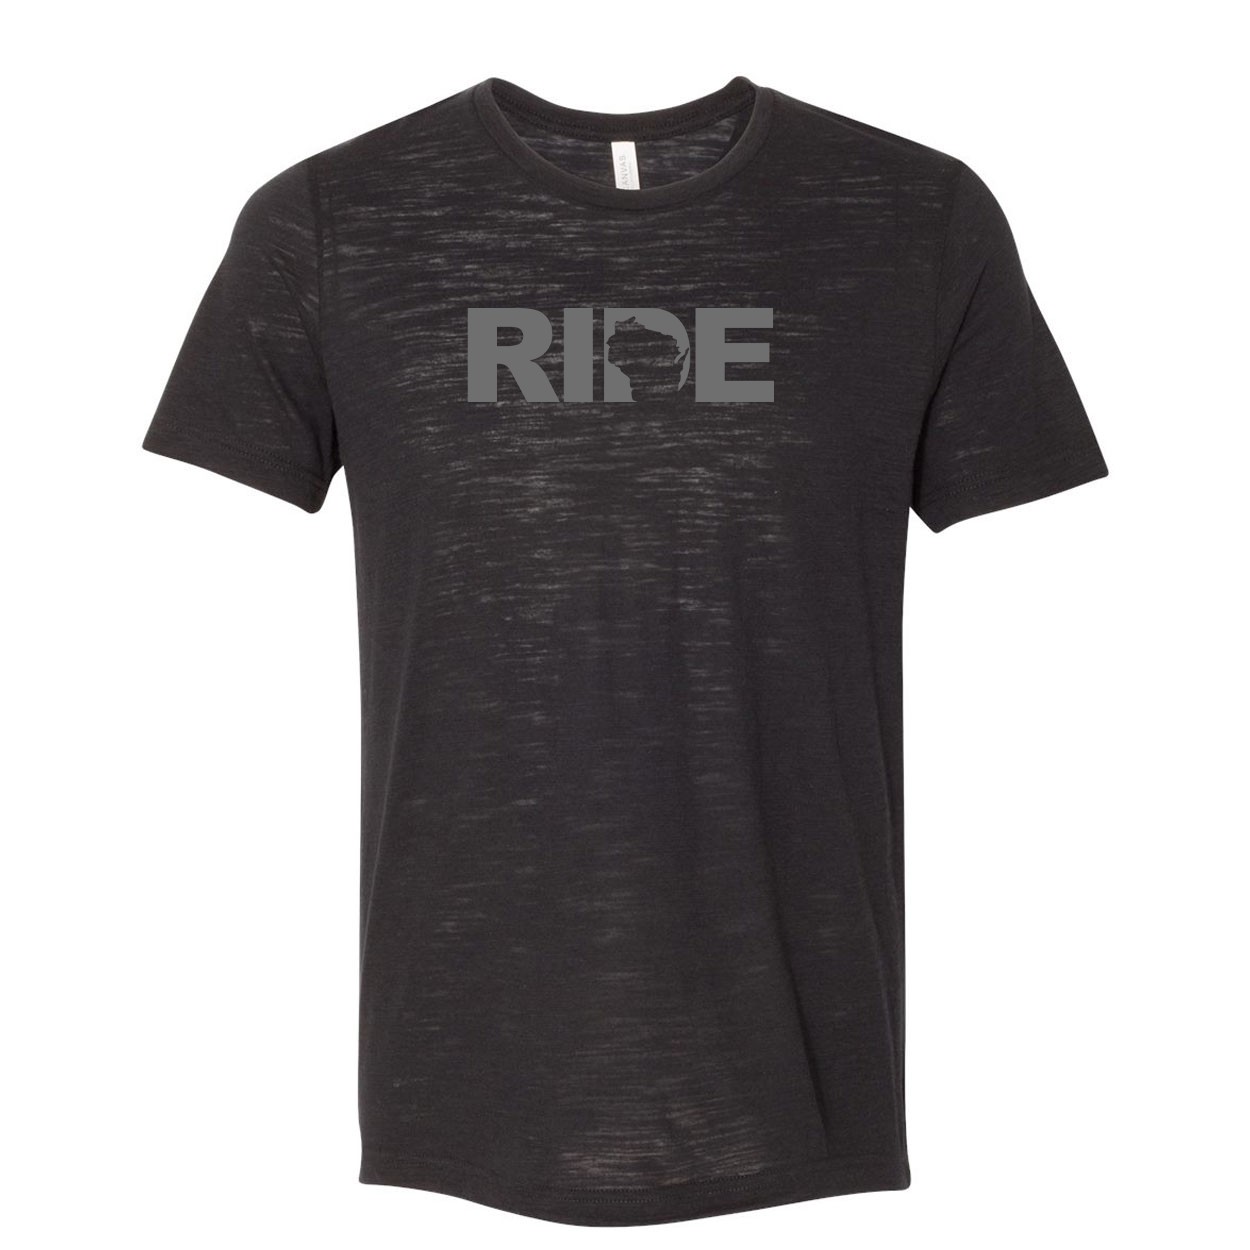 Ride Wisconsin Classic Unisex Premium Texture T-Shirt Solid Black Slub (Gray Logo)